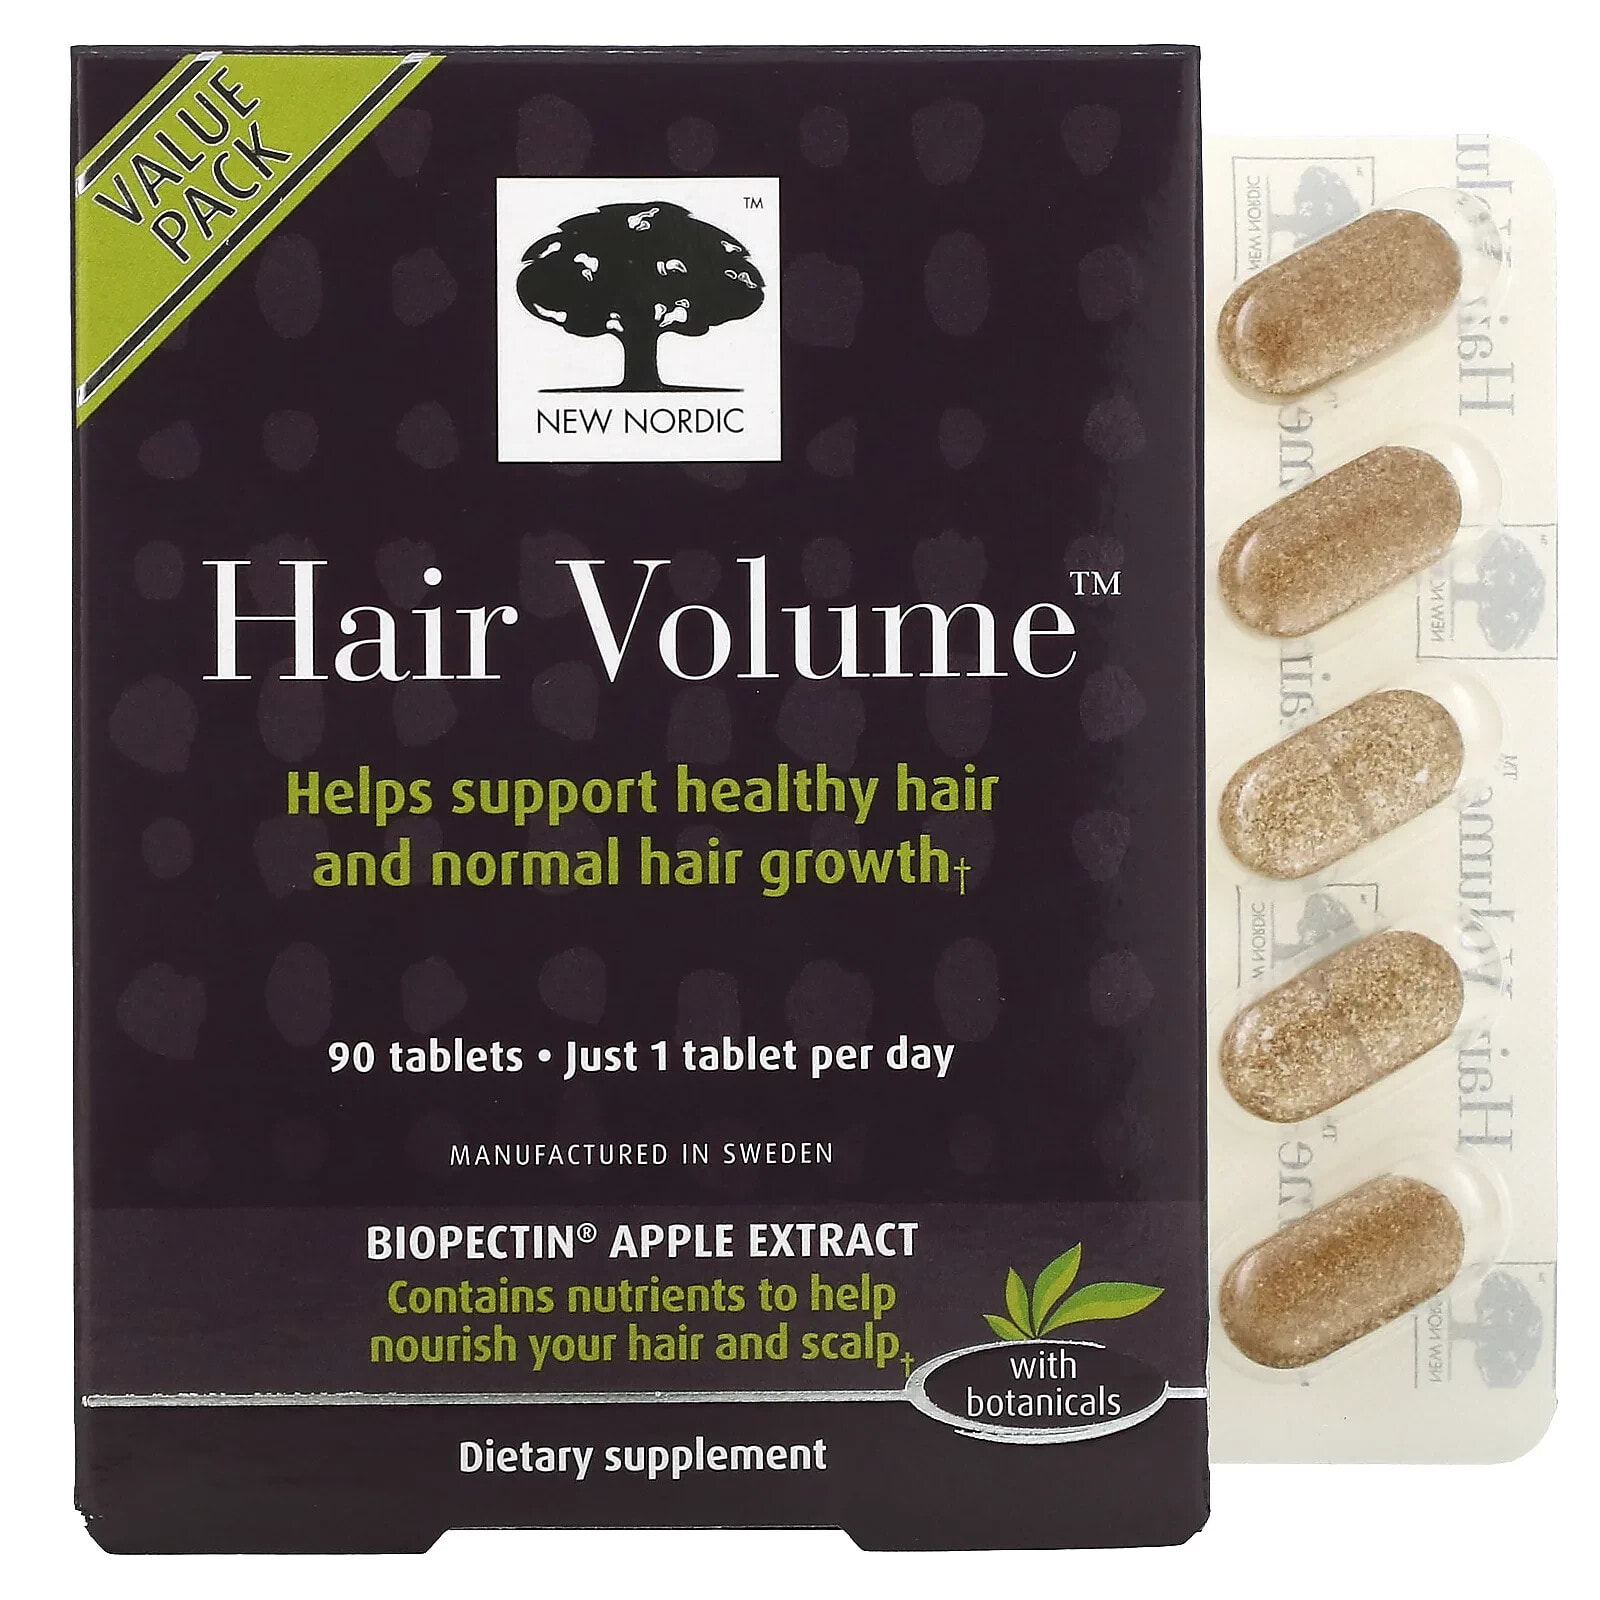 Нью Нордик УС Инк, Hair Volume, средство для роста и объема волос, с растительными ингредиентами, 30 таблеток